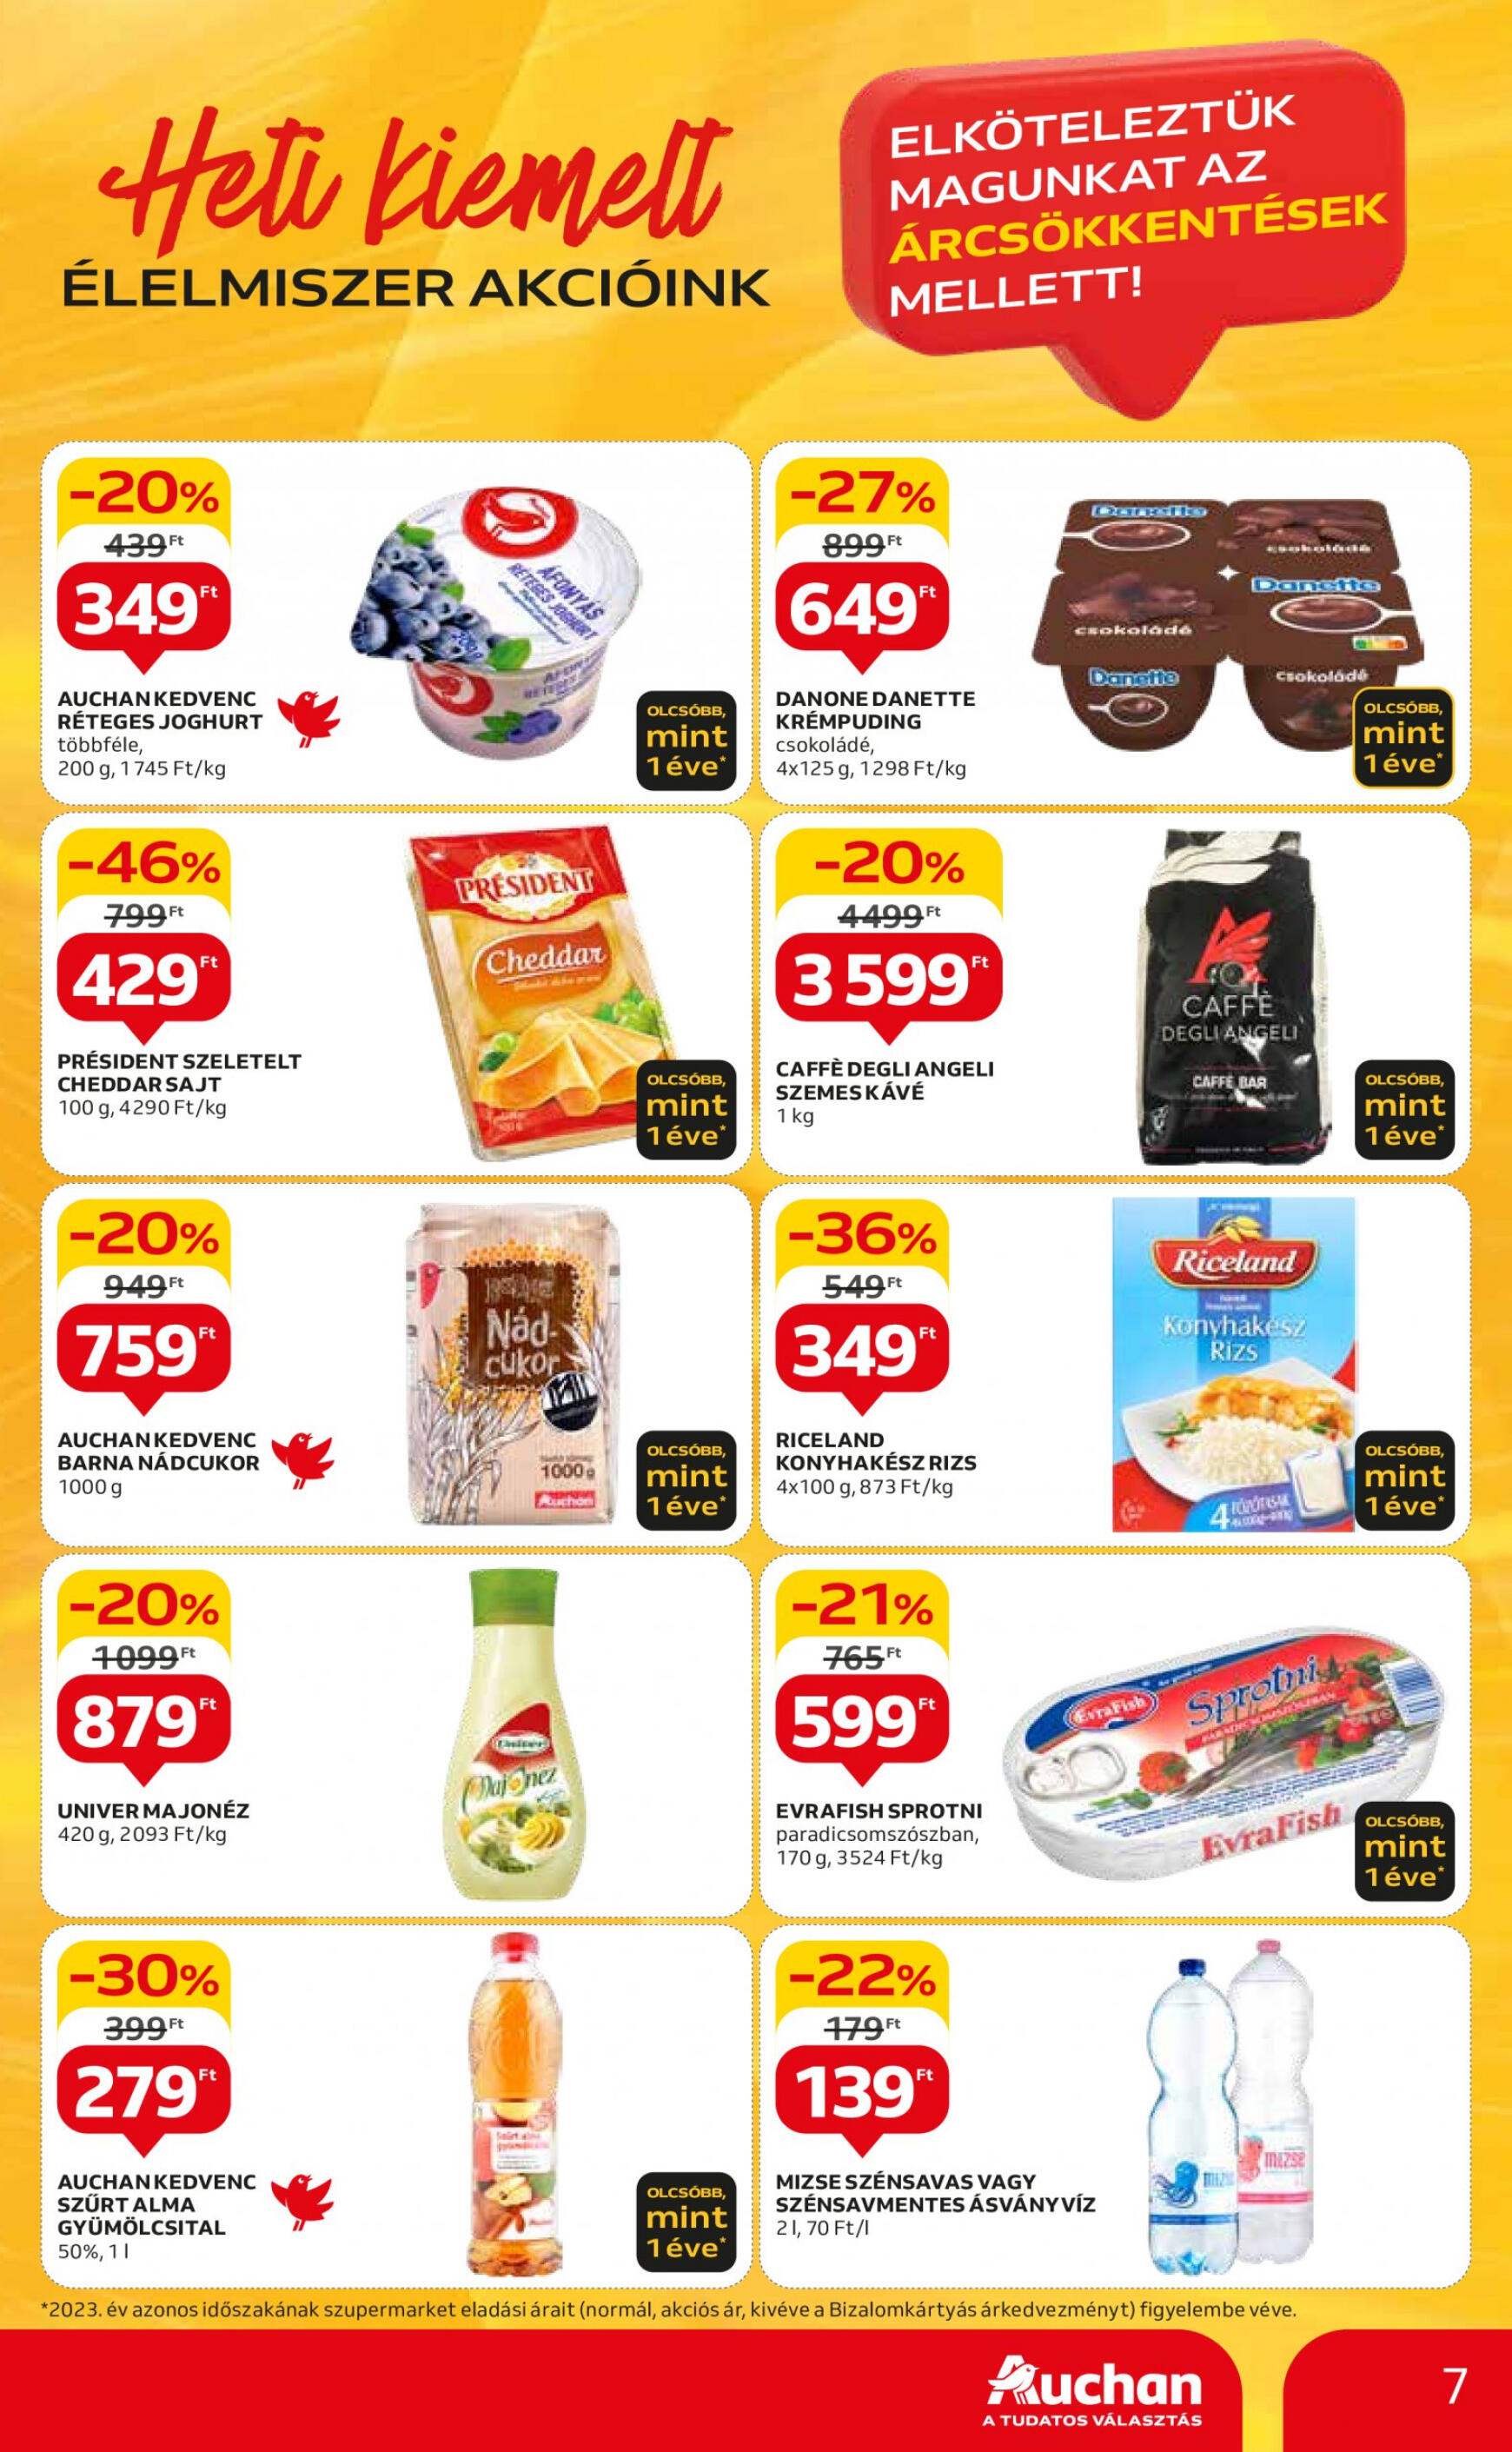 auchan - Aktuális újság Auchan szupermarket 05.09. - 05.15. - page: 7